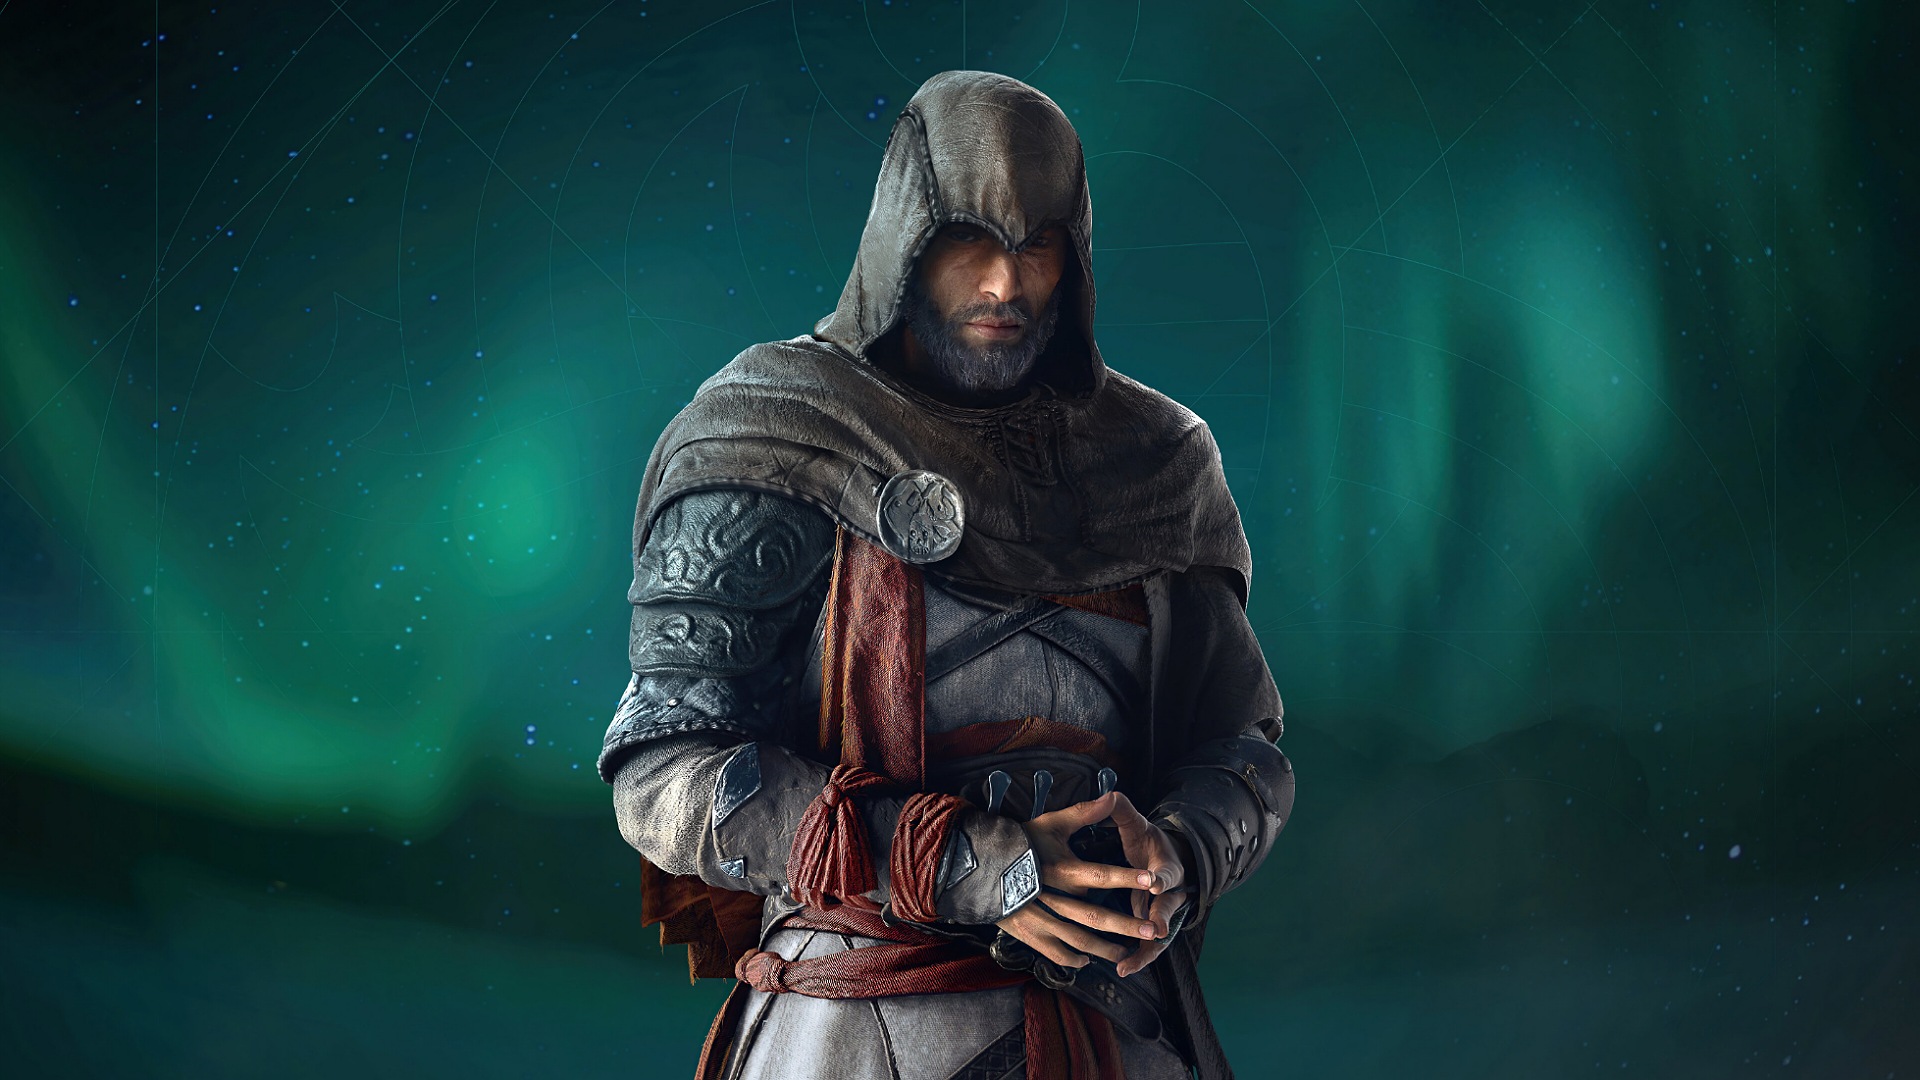 بازی جدید Assassin's Creed Rift - اساسینز کرید